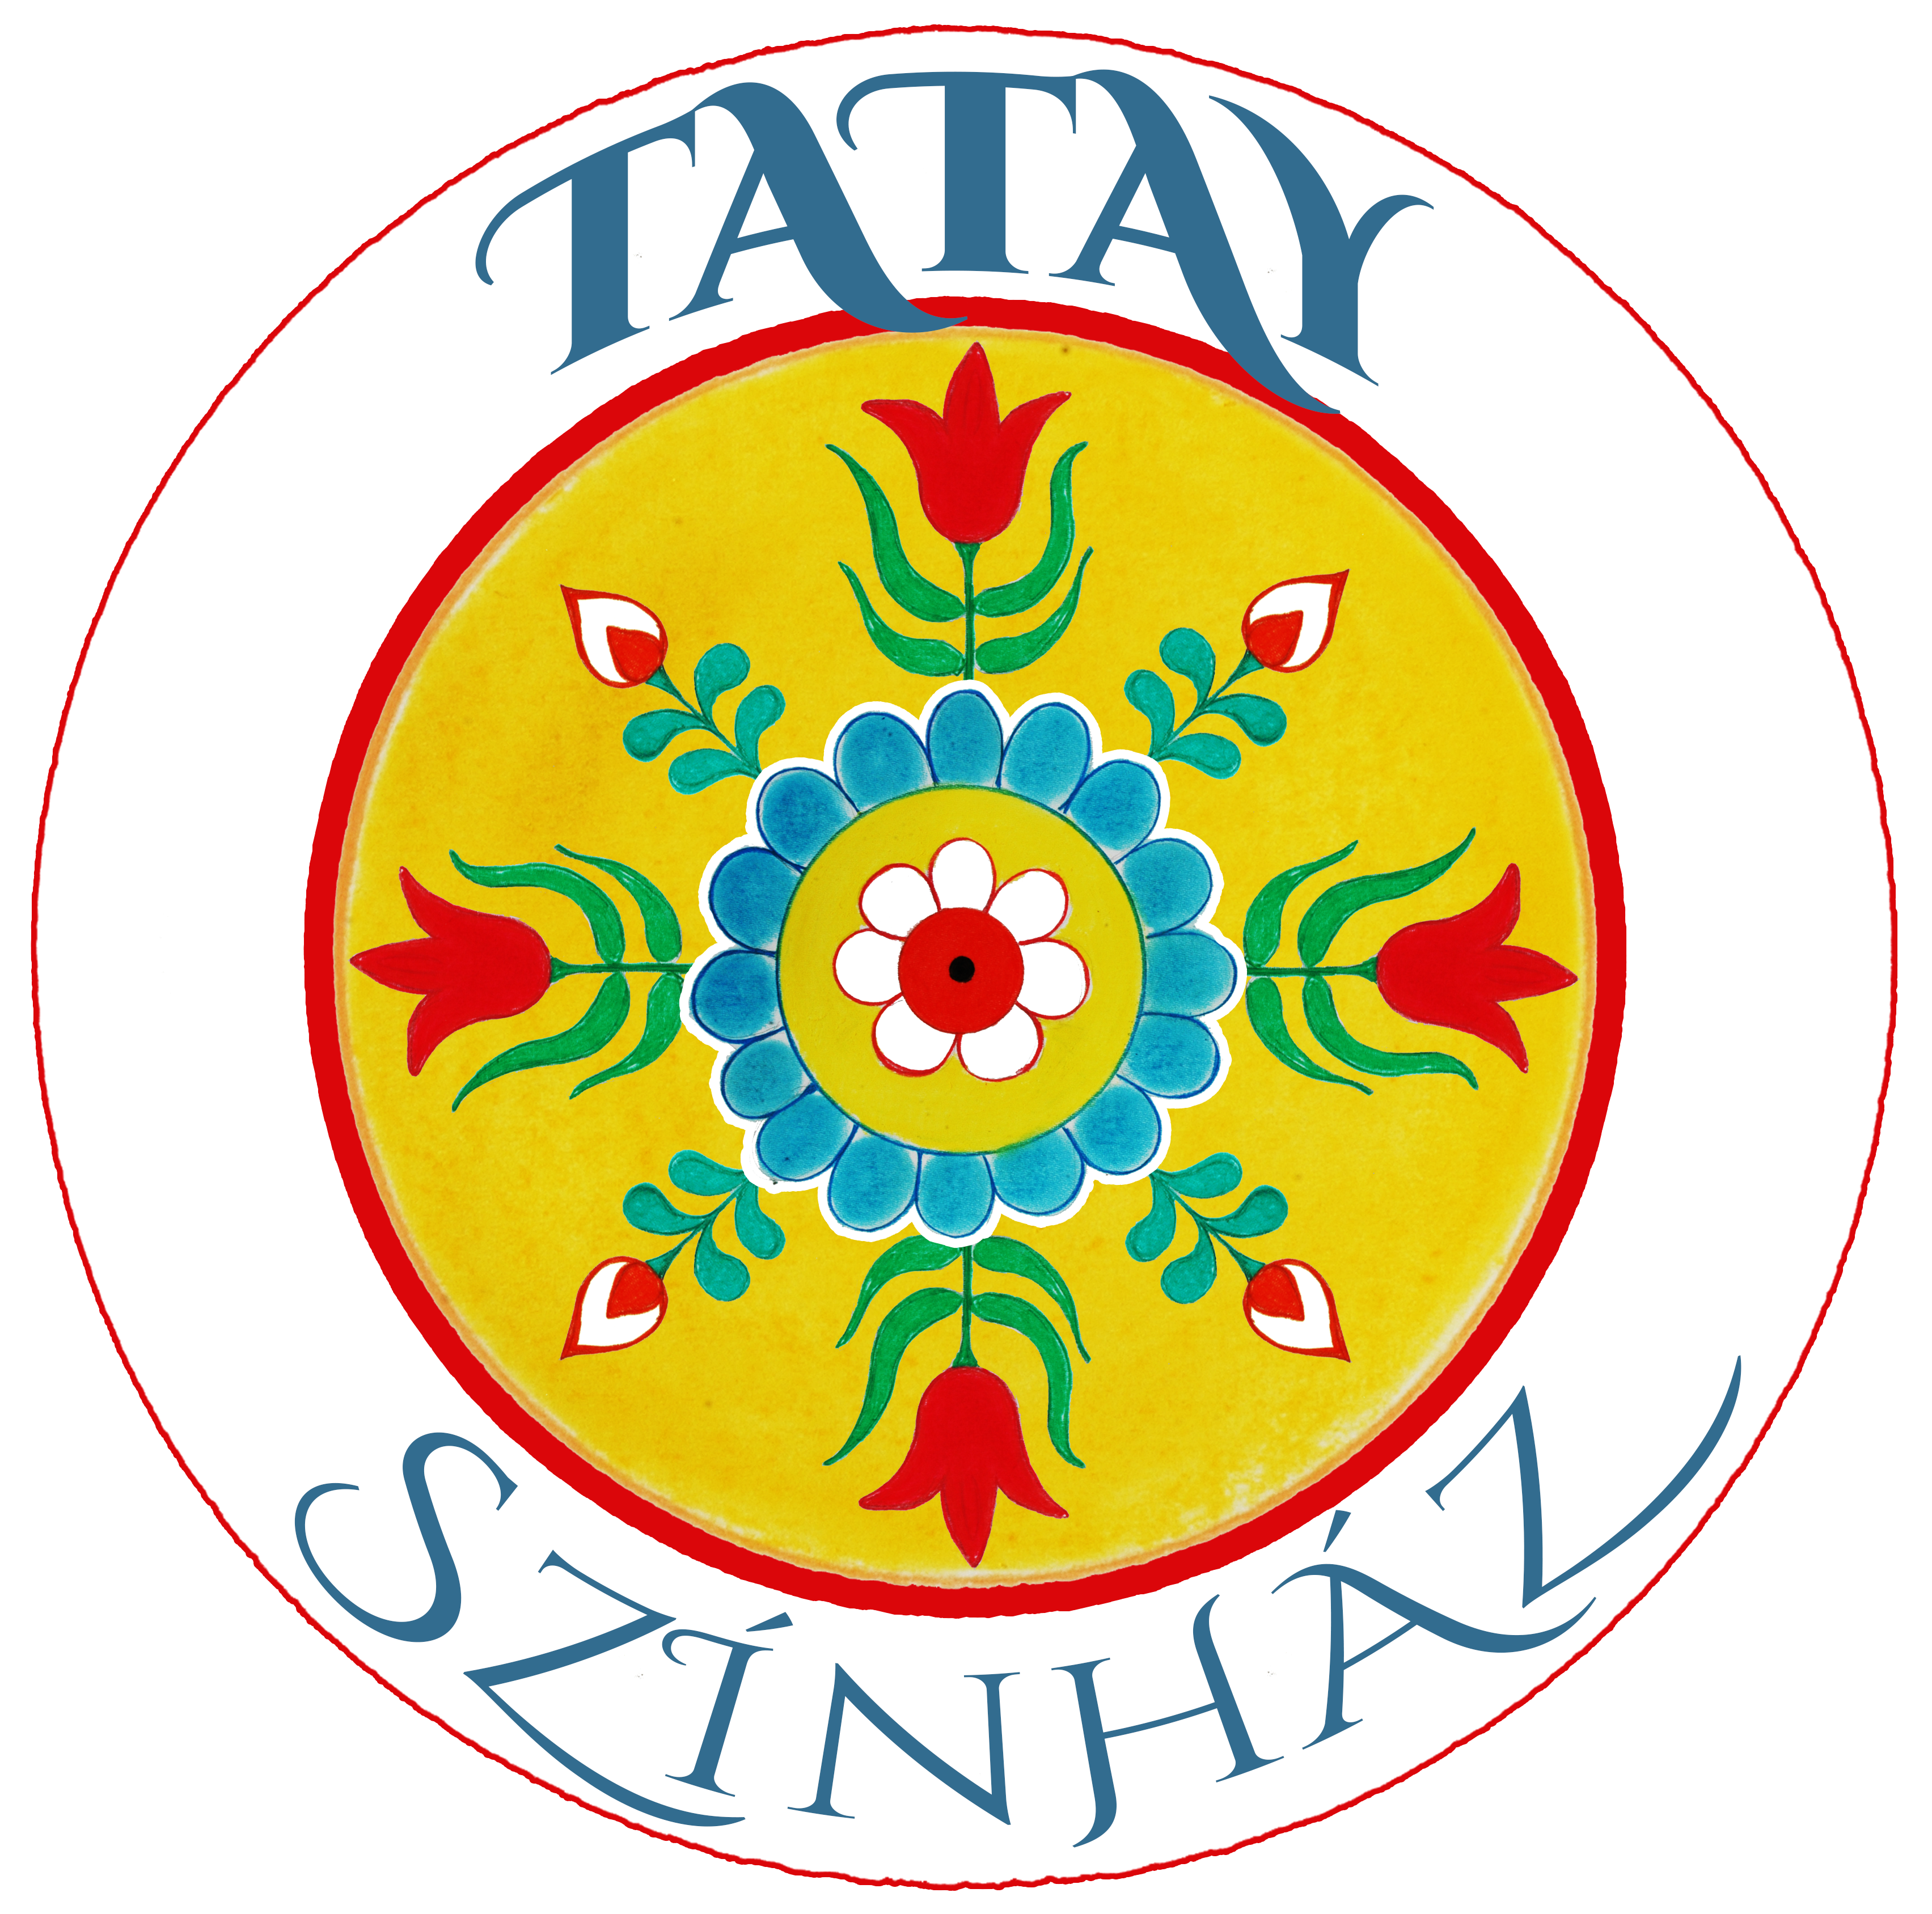 Tatay Színház